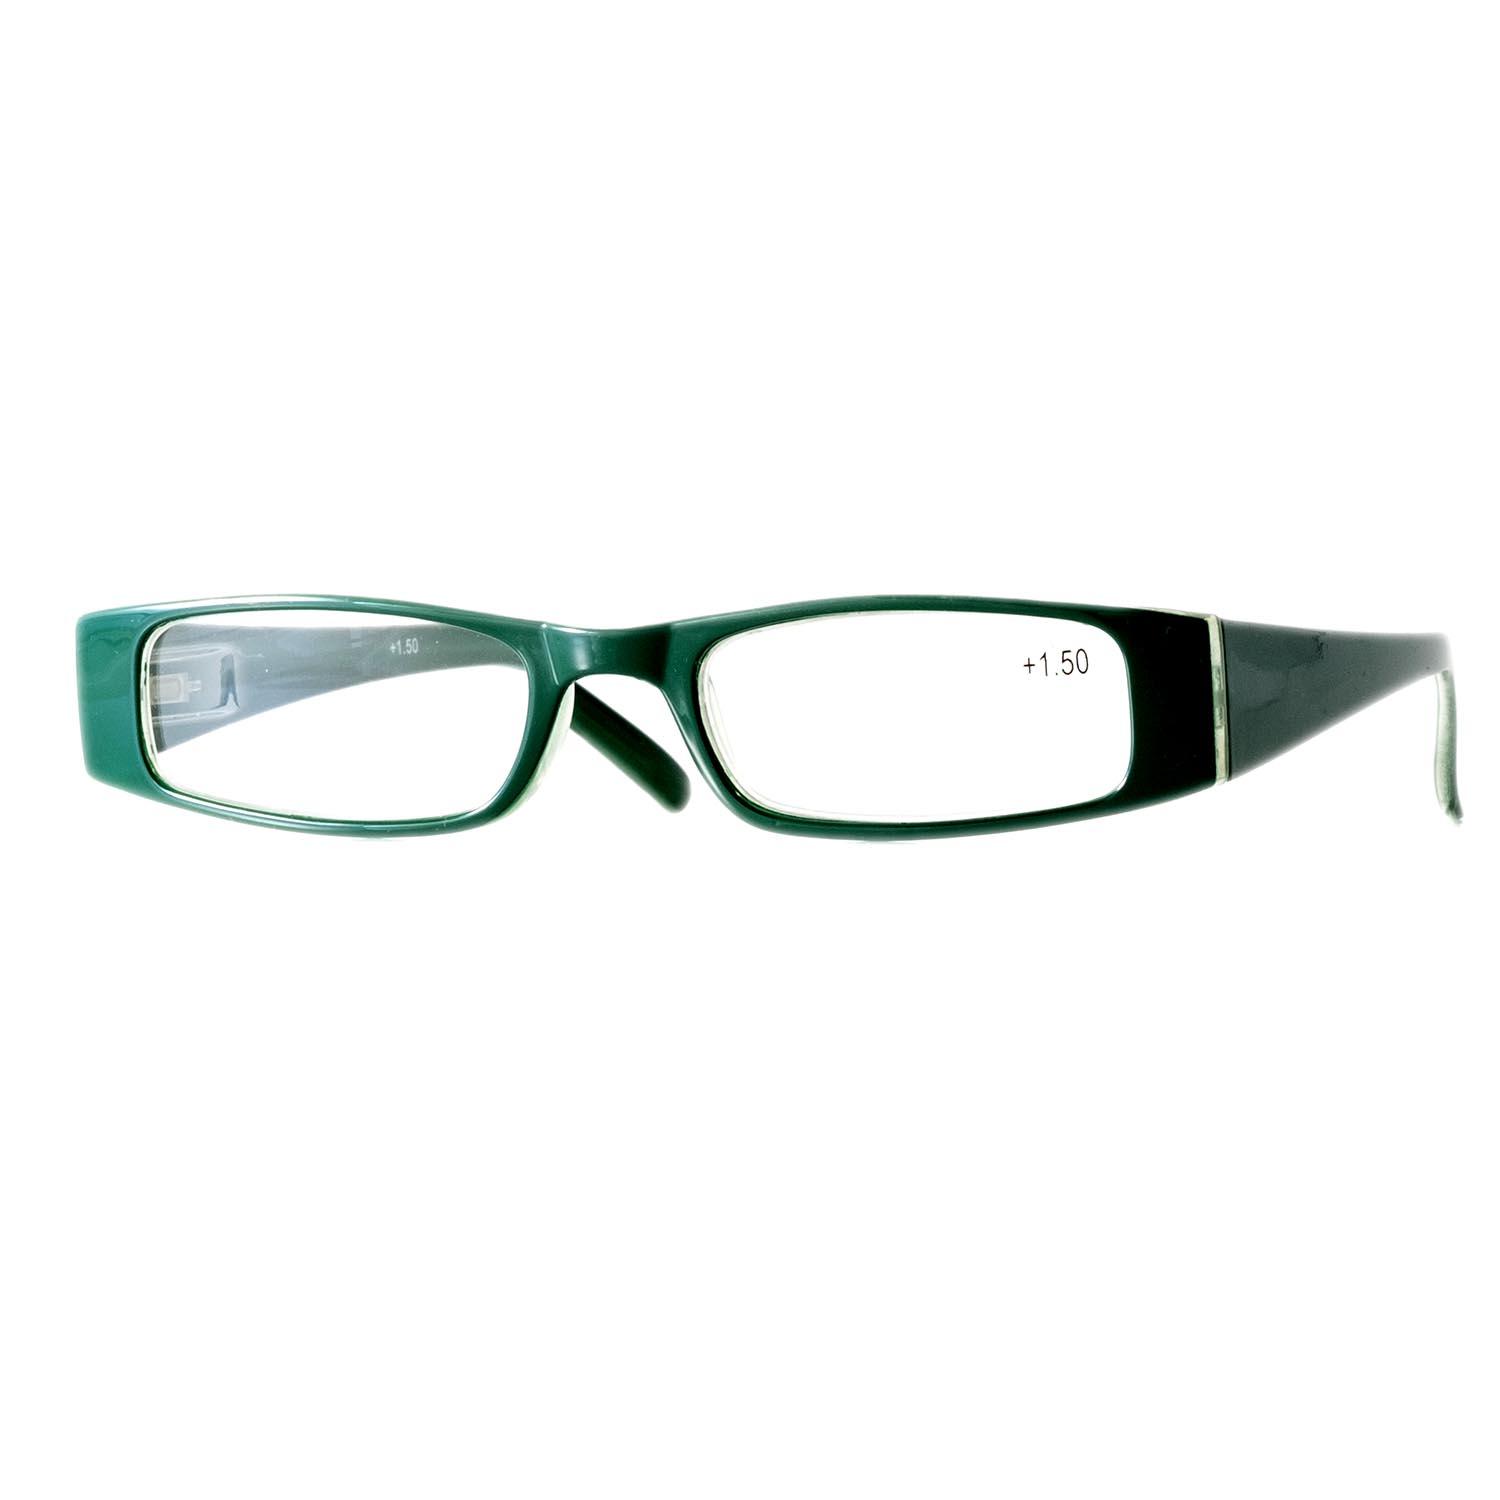 Gafas de lectura color verde con aumento +1.5.